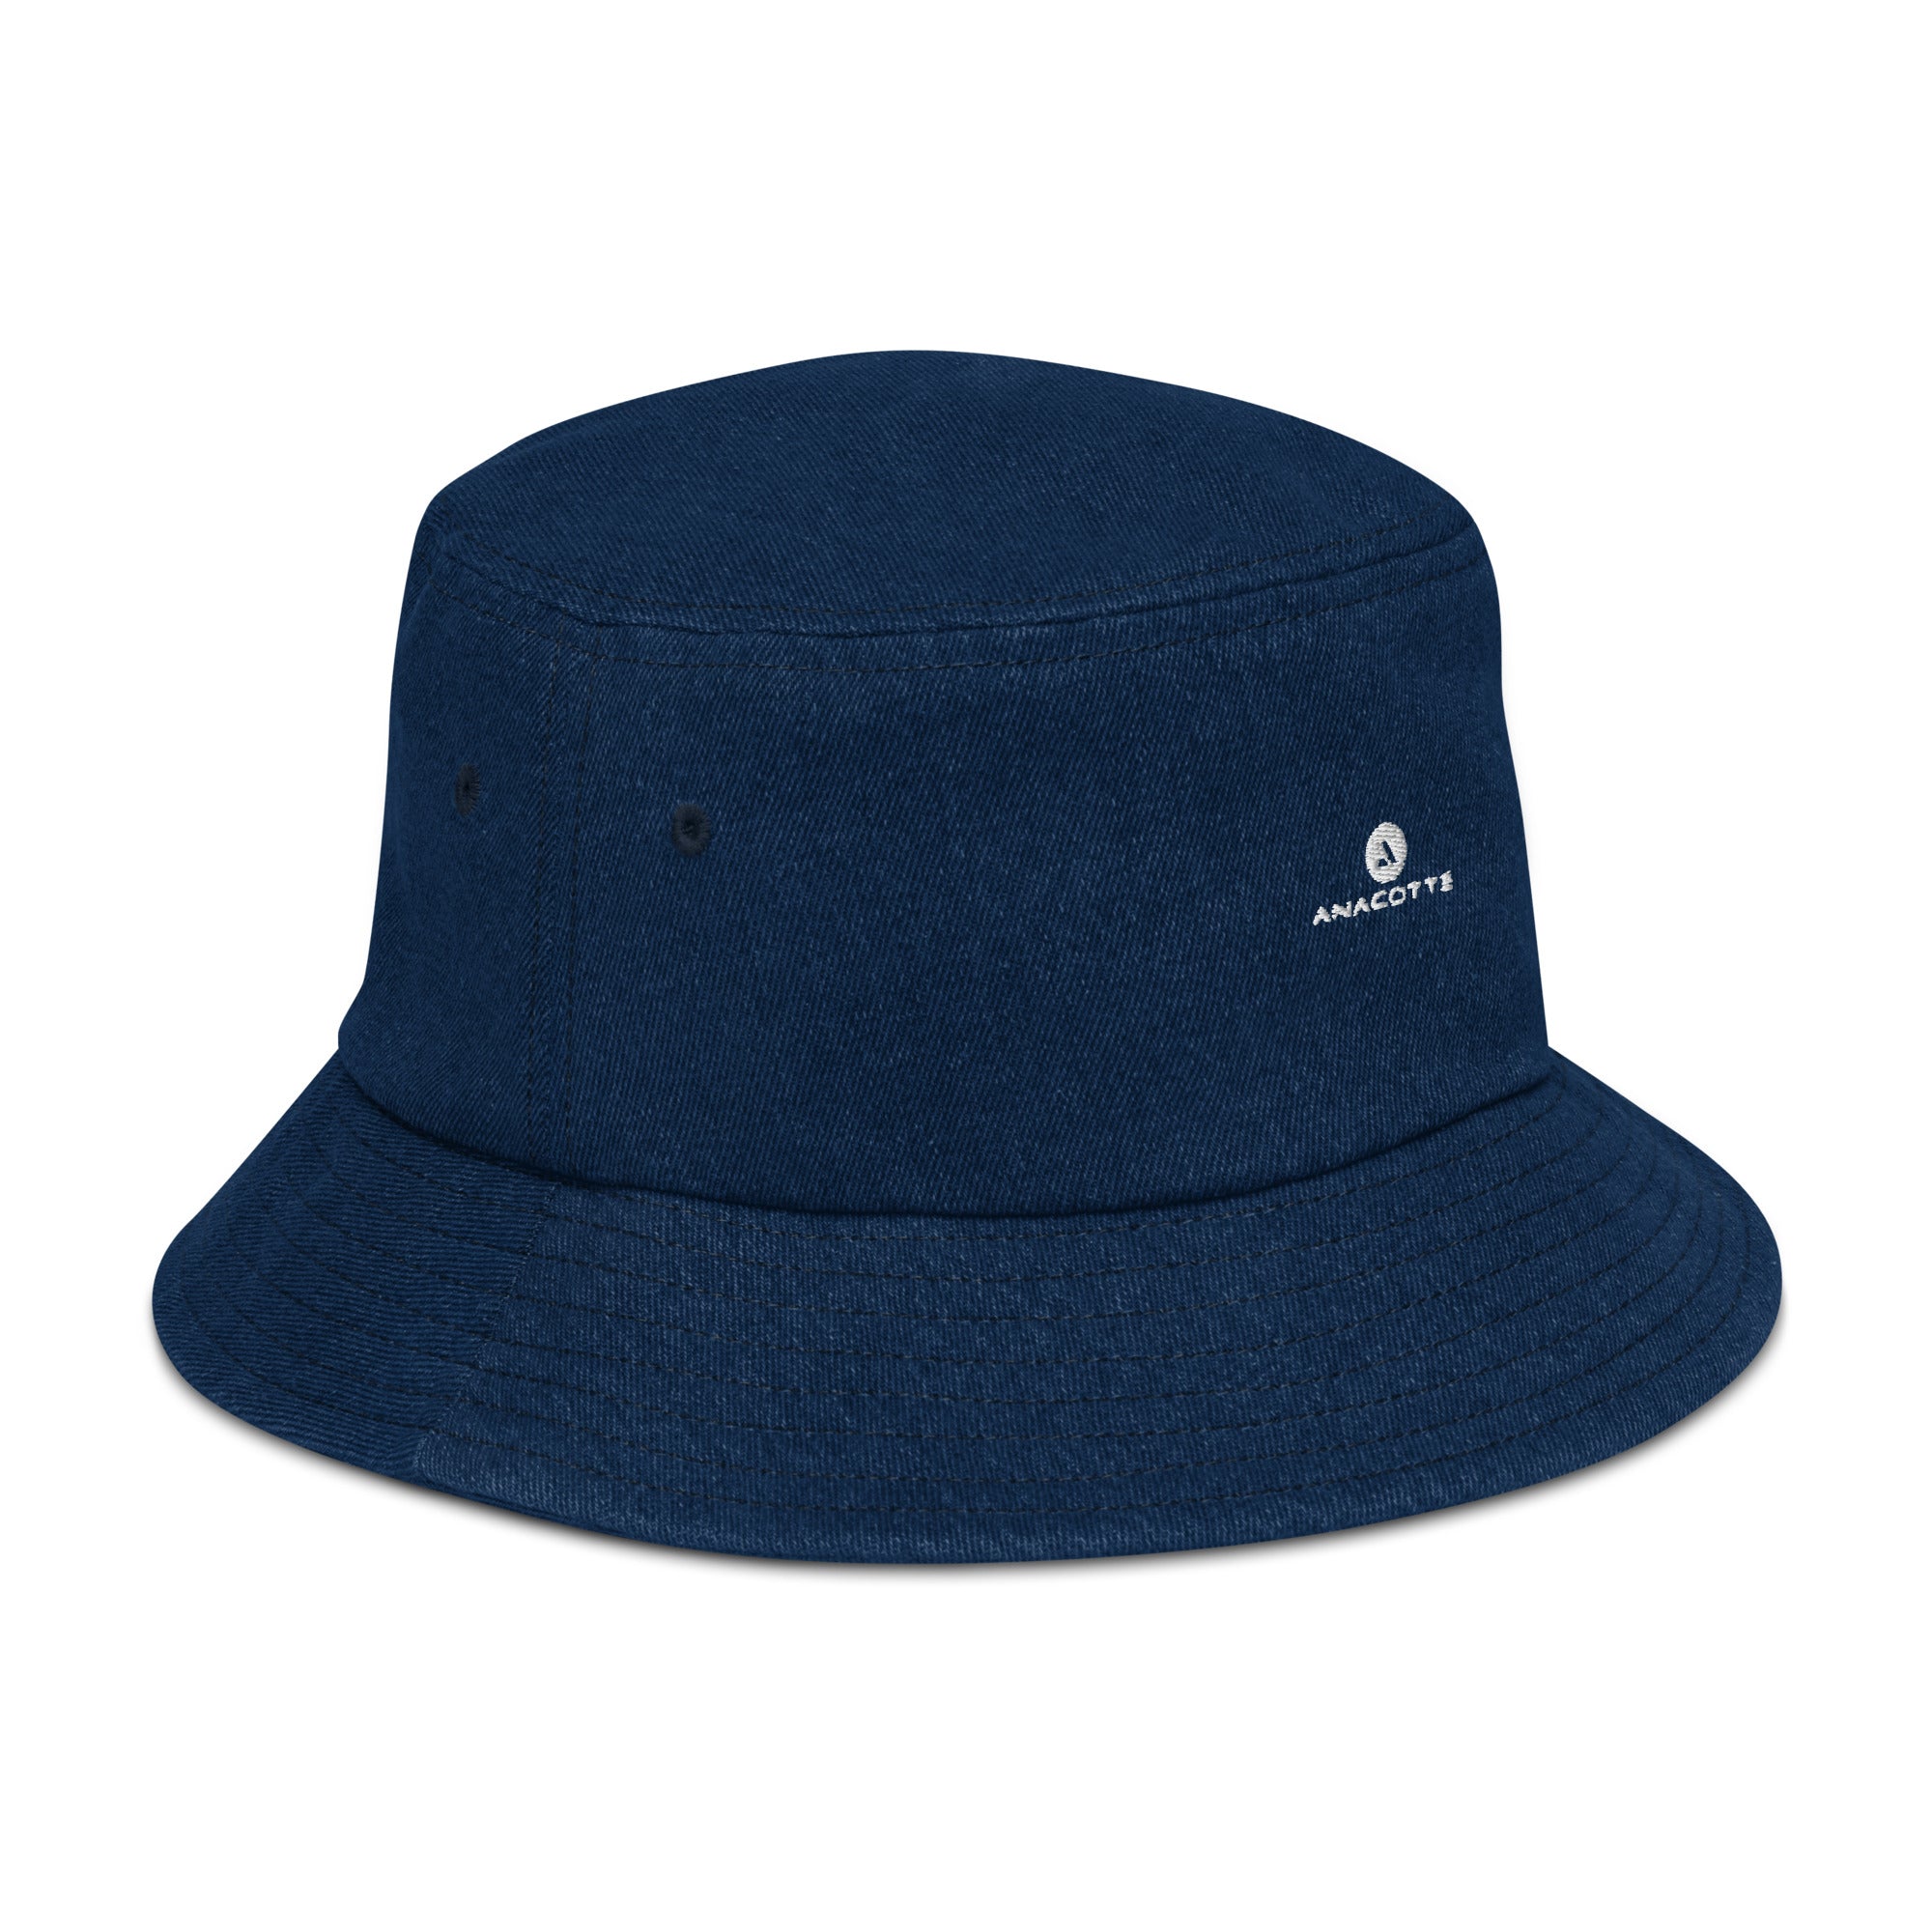 Anacotte Denim bucket hat